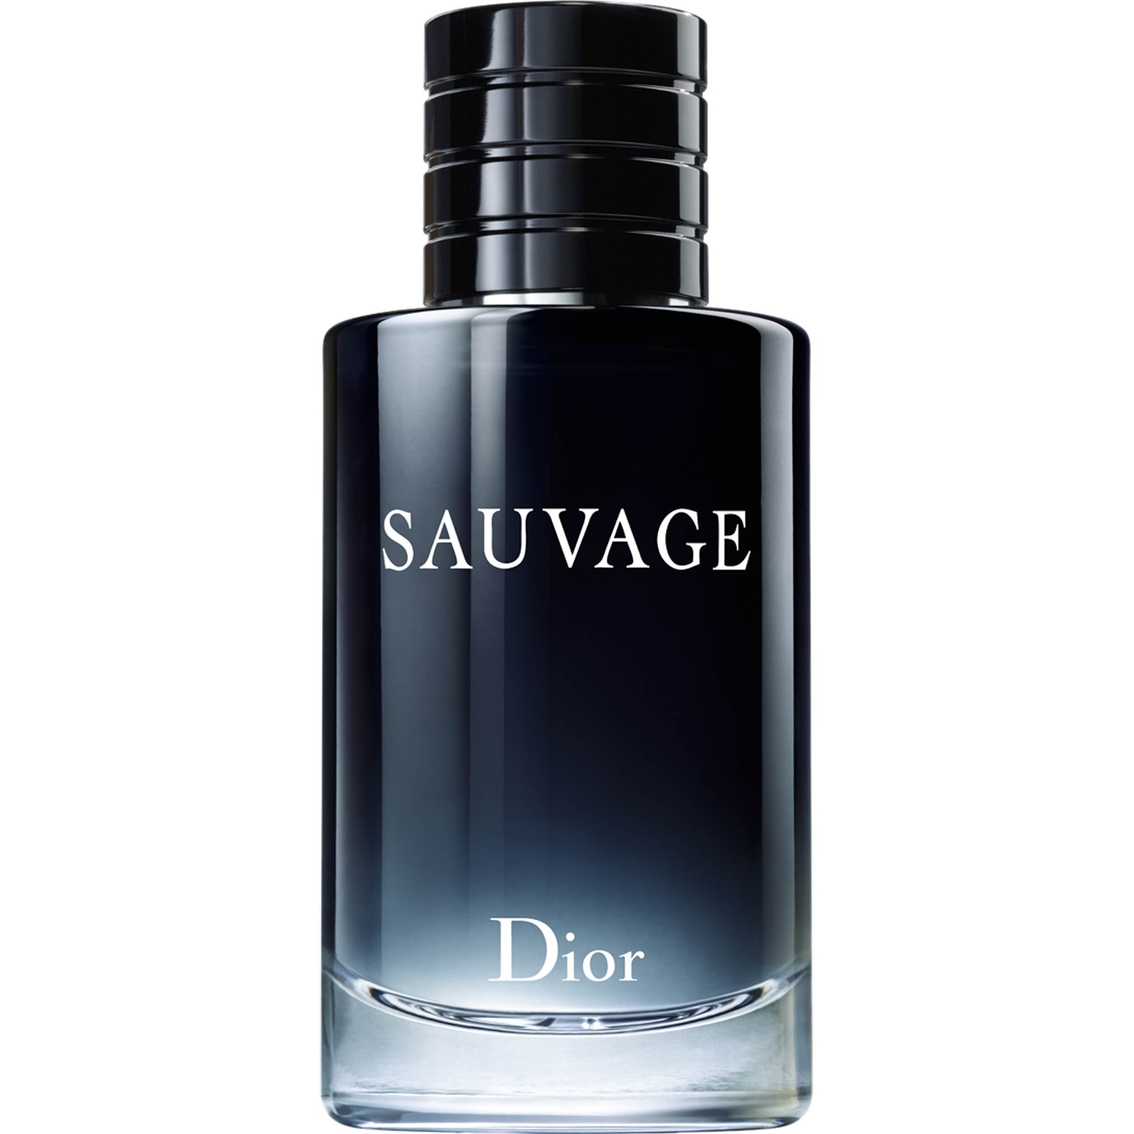 Dior Sauvage Eau De Toilette Spray 6.8 Oz., Men's Fragrances, Beauty &  Health